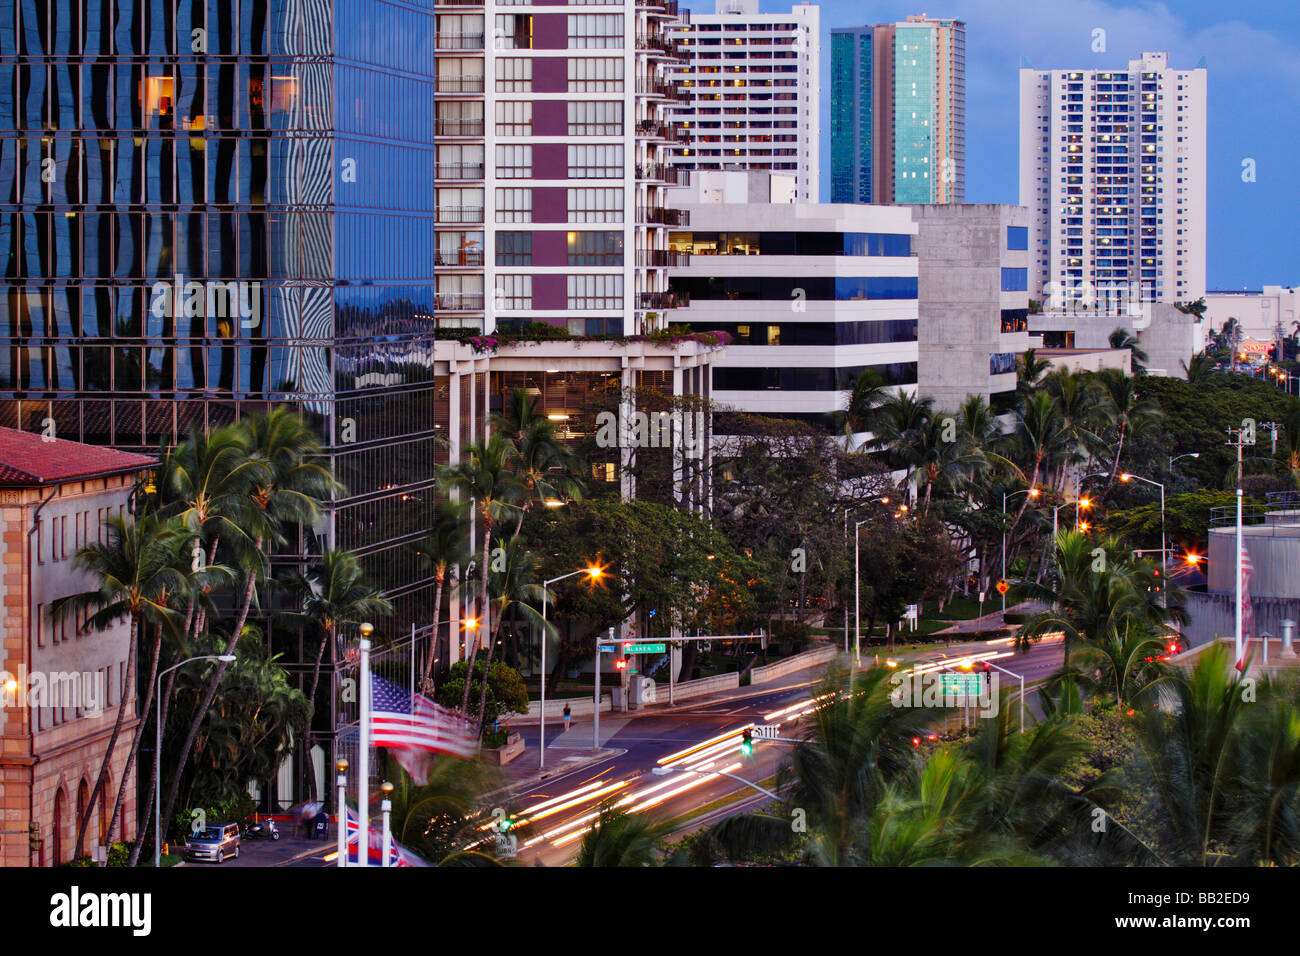 Le centre-ville d'Honolulu près de Aloha Tower au crépuscule Honolulu Oahu Hawaii USA Banque D'Images